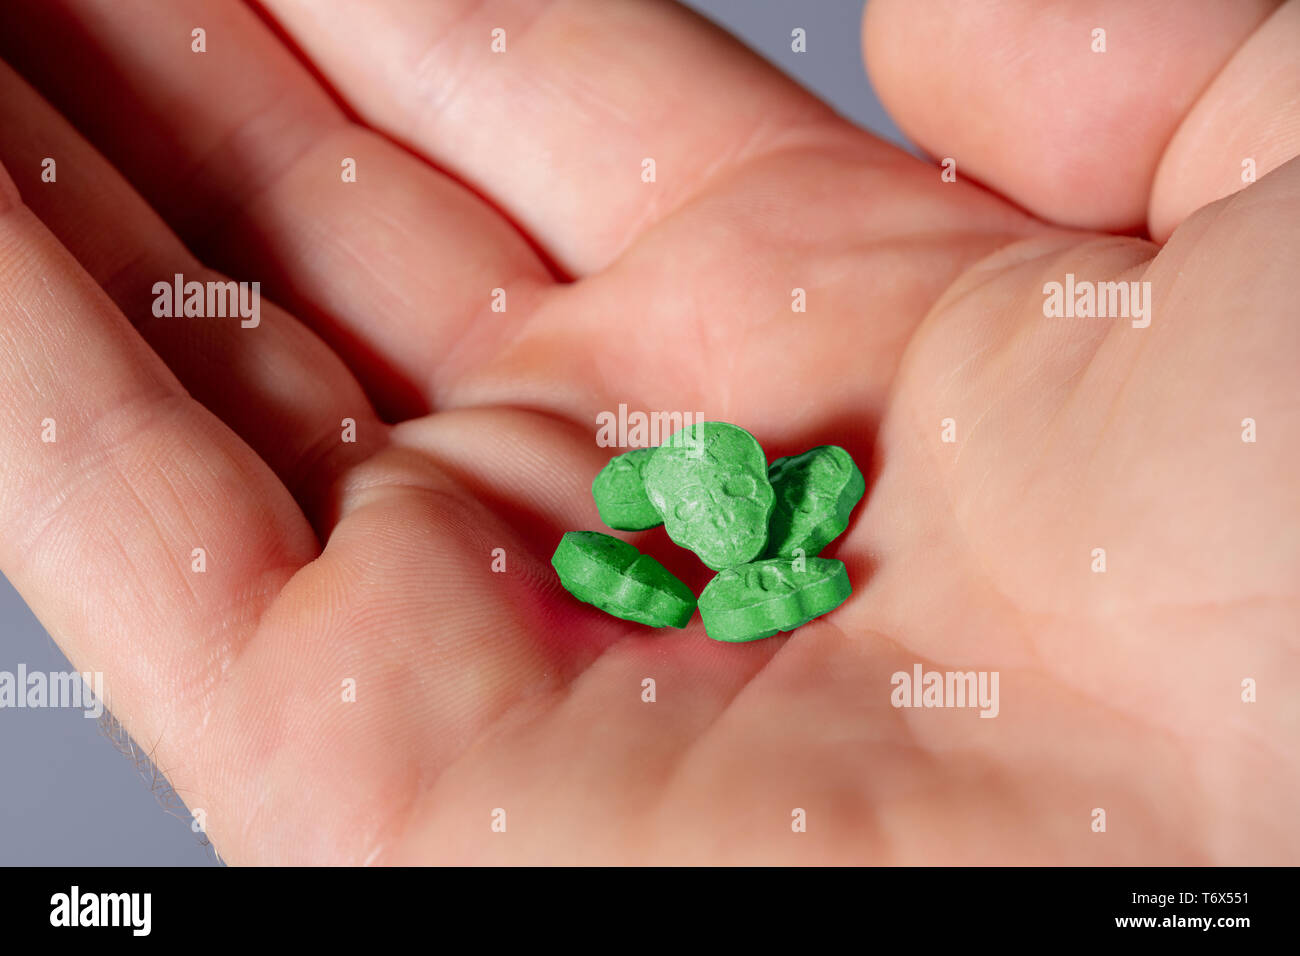 Eine offene Europäische männlich Hand mit einem kleinen Haufen grüne Armee Schädel, Ecstasy, MDMA, Amphetaminen oder Medikamente wie ein Schädel geprägt. Stockfoto